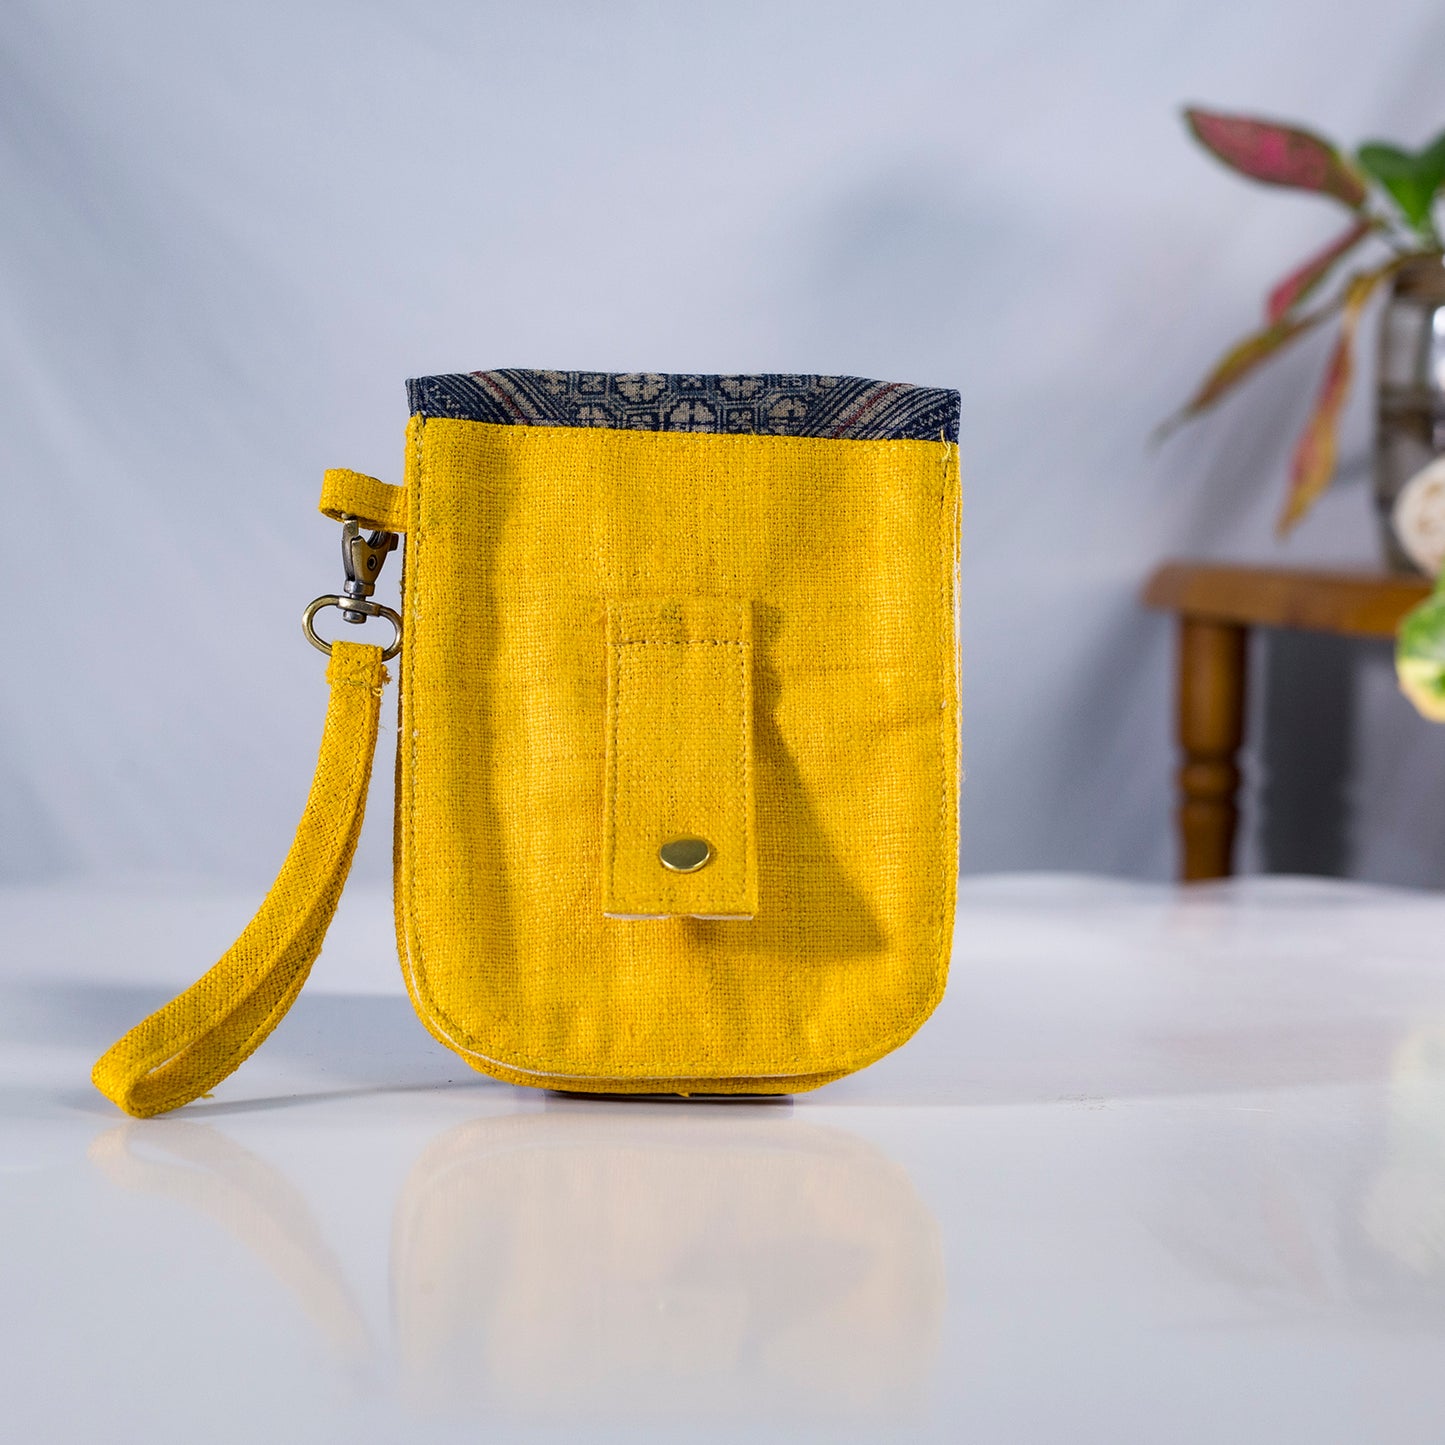 Flip phone belt bag, wrist bag option, natural hemp in YELLOW color